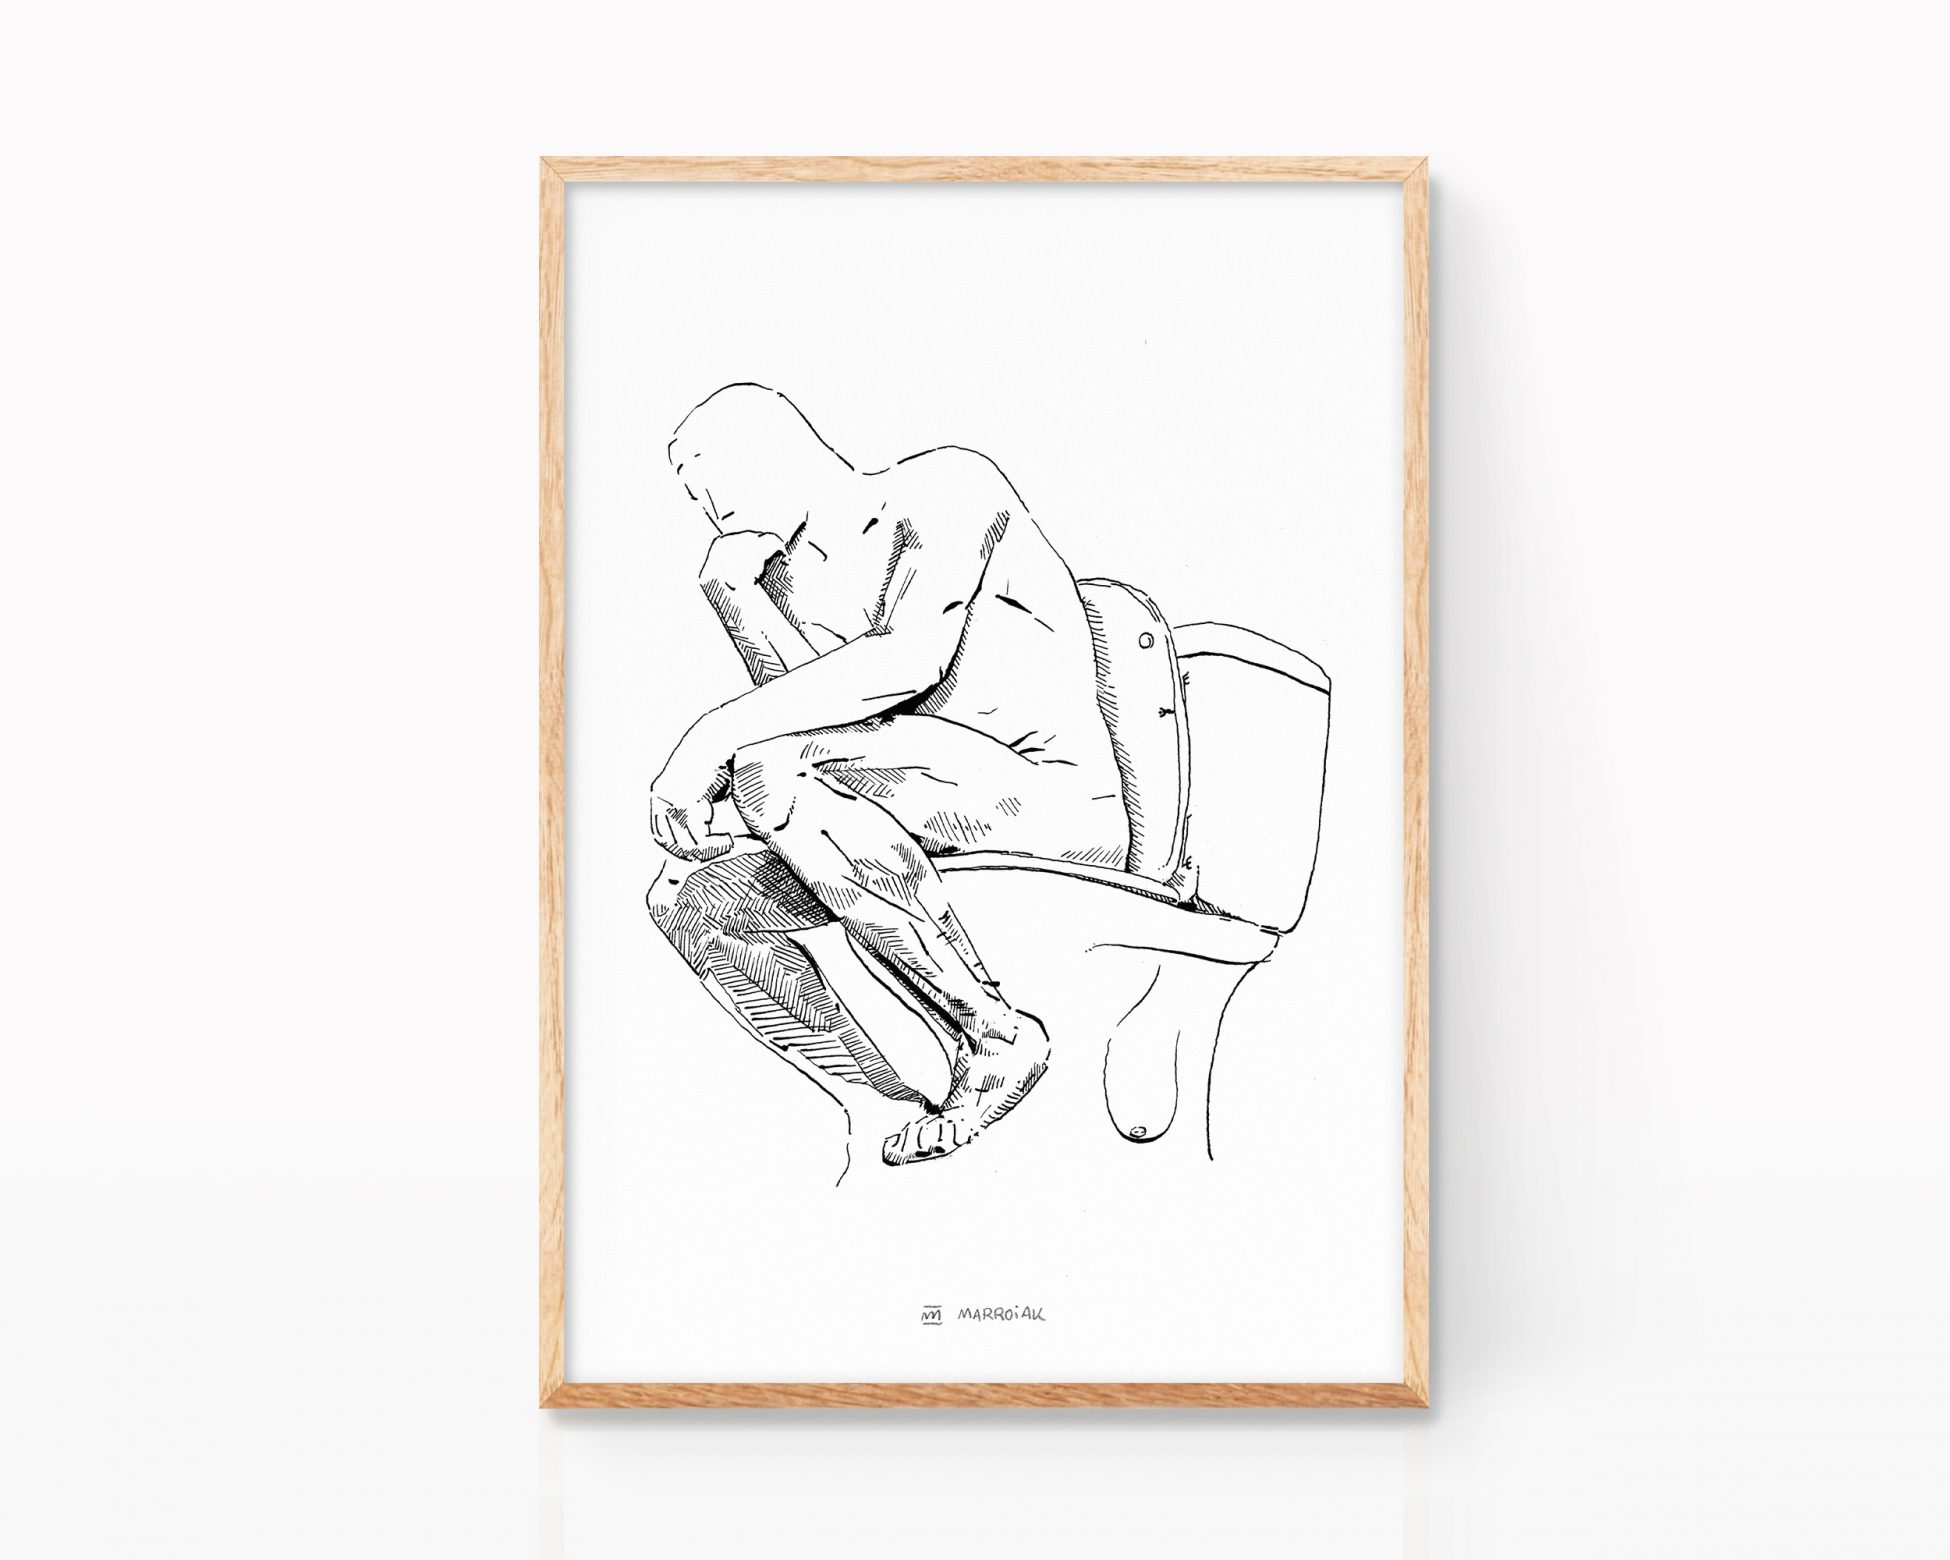 Lámina decorativa para enmarcar con una ilustración de la escultura de Lámina con un dibujo en blanco y negro del pensador de Auguste Rodin El Pensador. Dibujo para decoración Arte contemporaneo